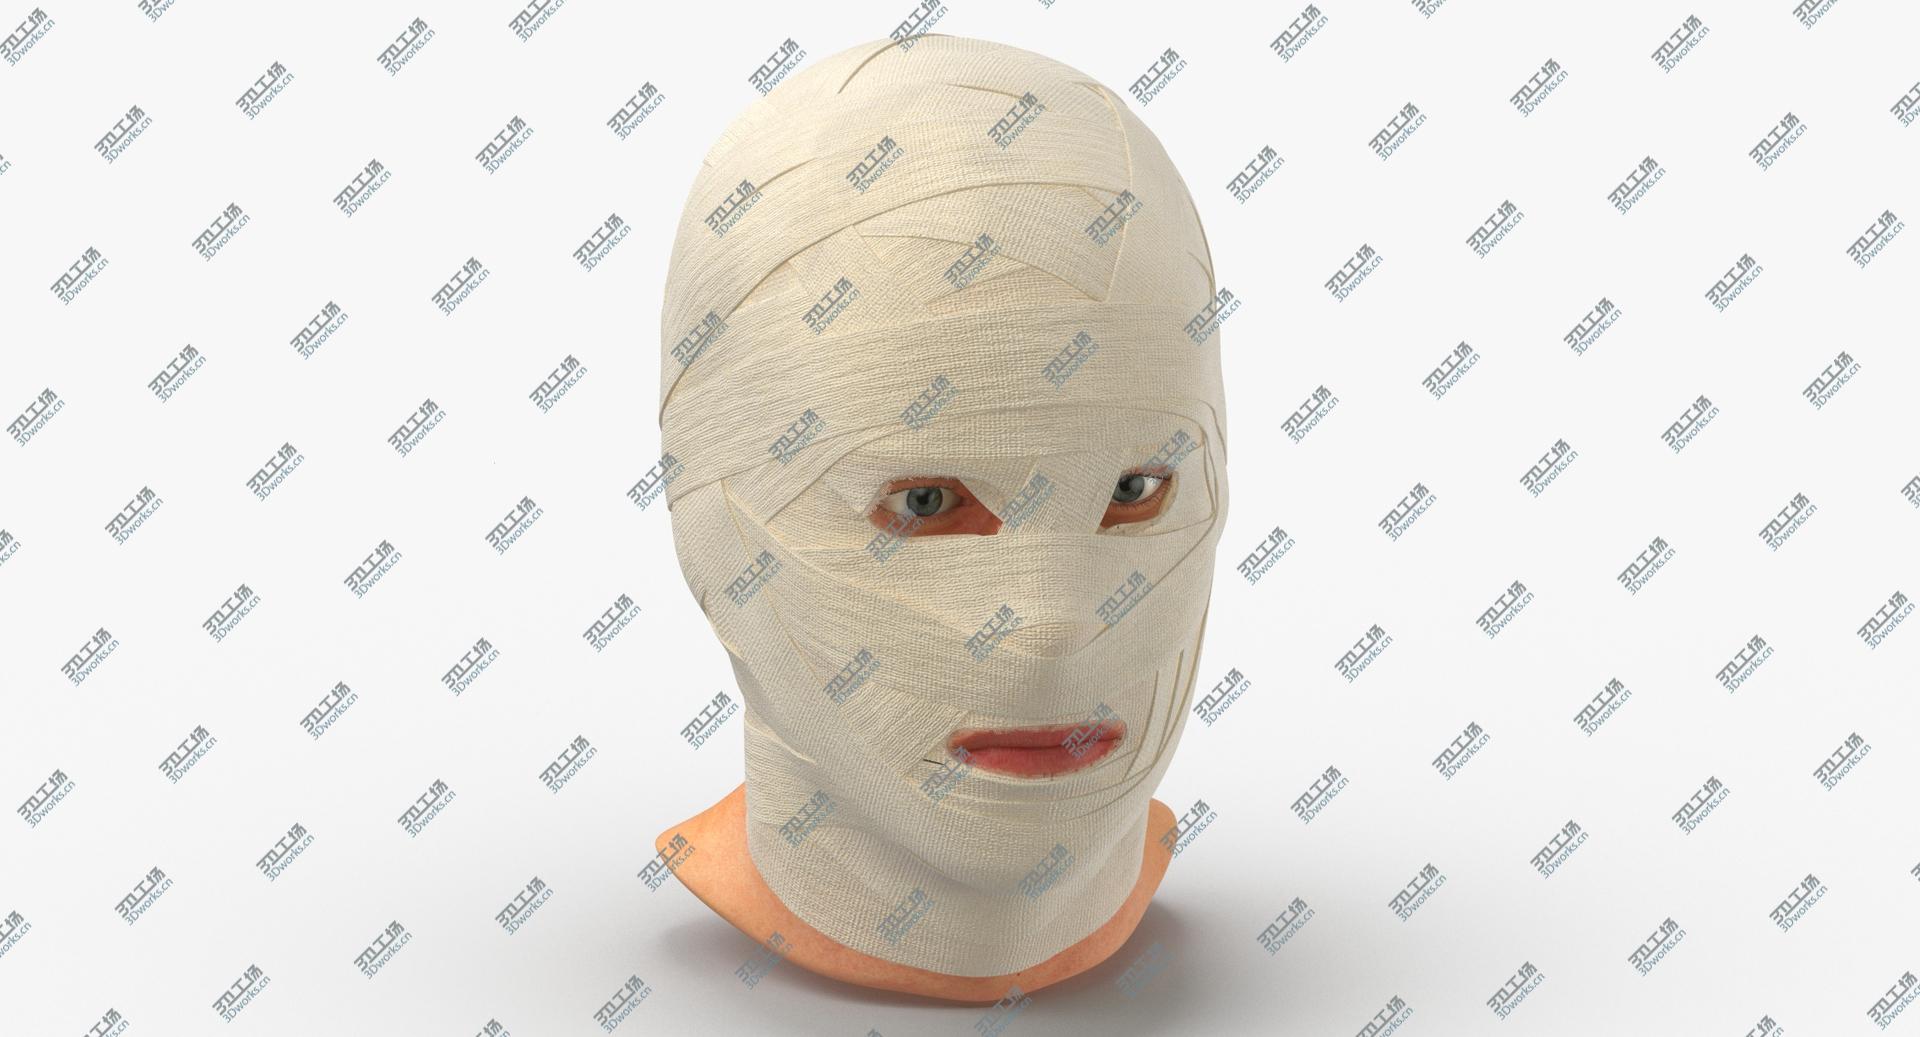 images/goods_img/202105071/3D Bandaged Head/4.jpg